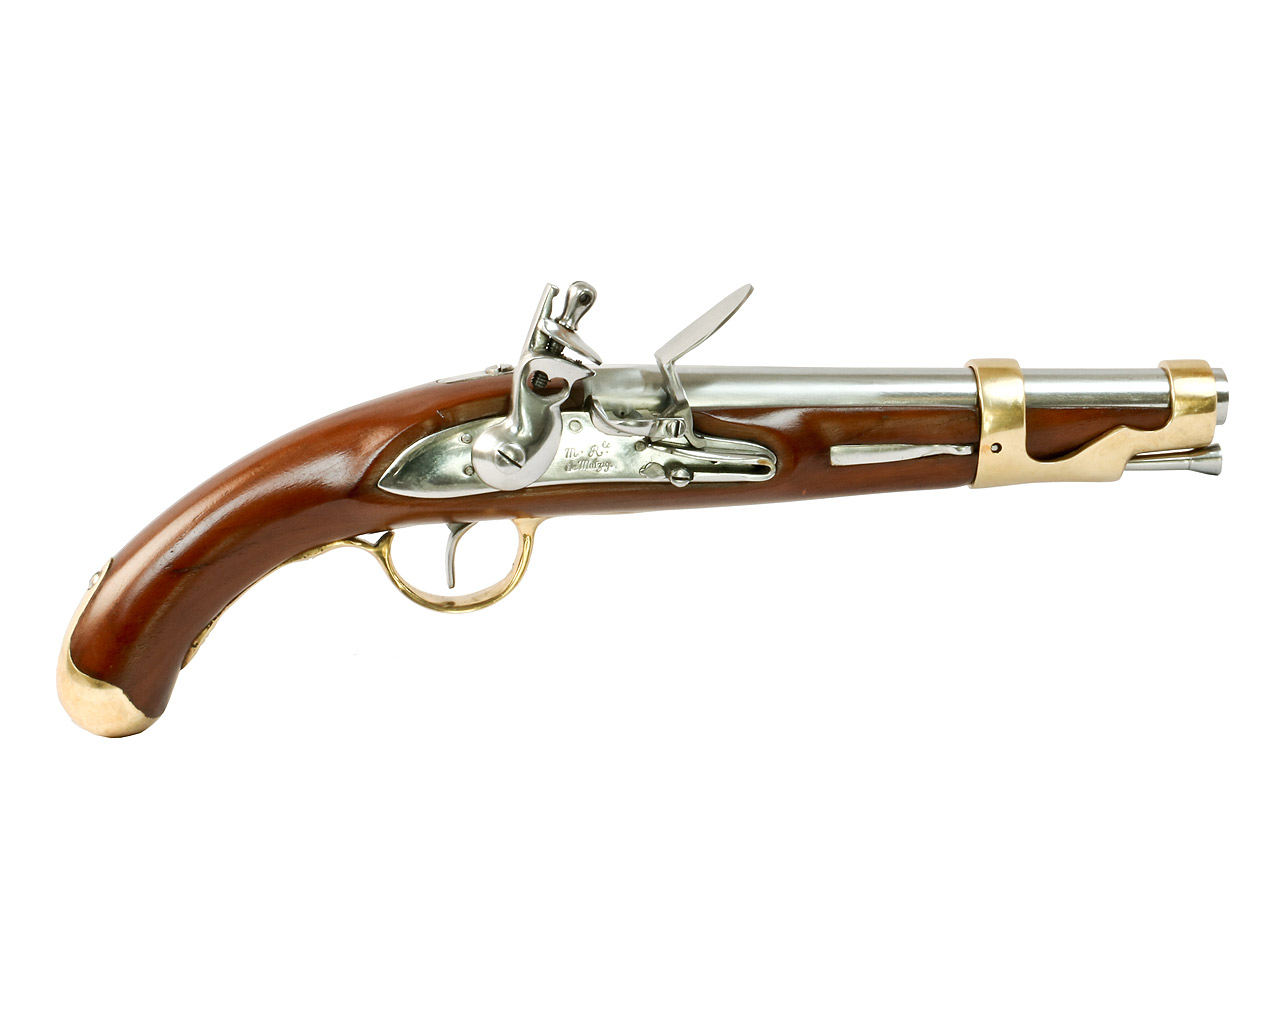 Vorderlader Steinschlosspistole French 1766, Kavalleriepistole, Kaliber .71 bzw. 18 mm (P18)